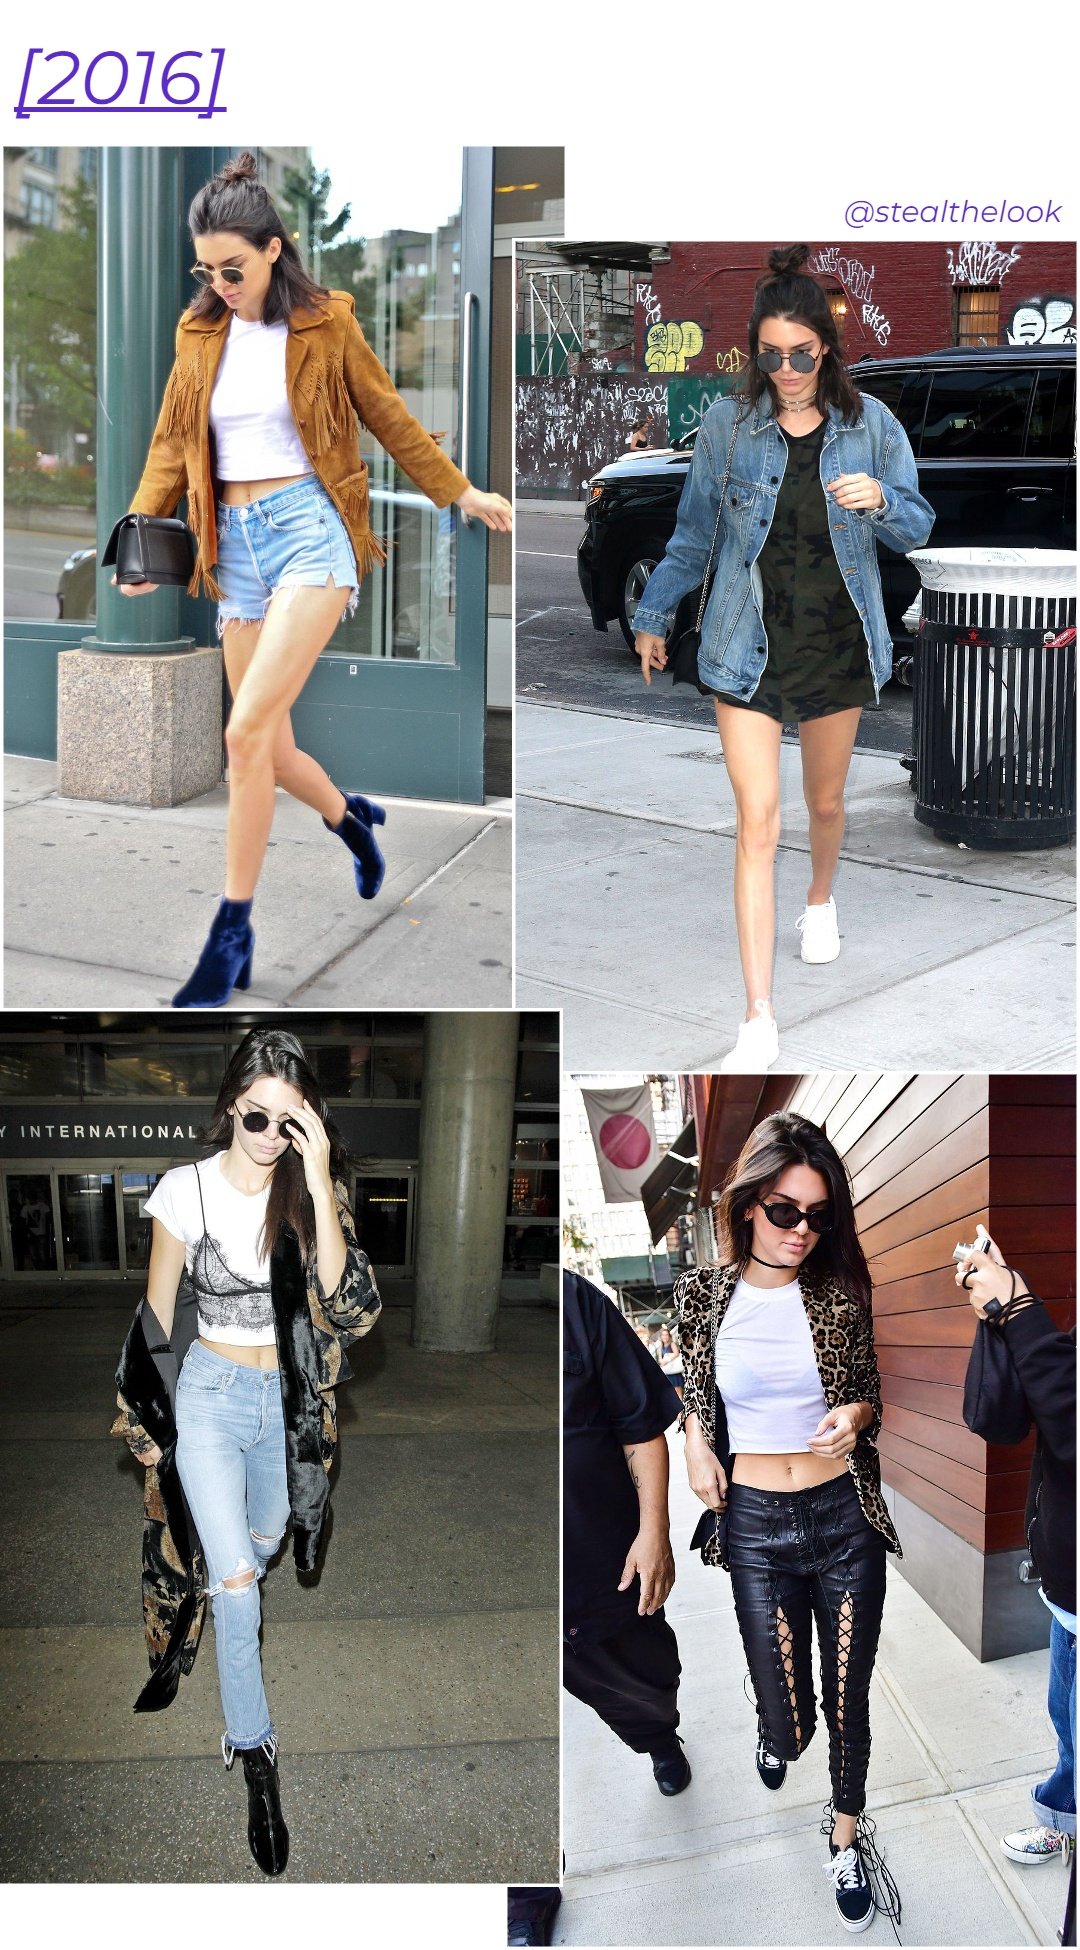 Kendall Jenner - roupas diversas - Kendall Jenner - primavera - colagem com 4 fotos diferentes da modelo andando - https://stealthelook.com.br